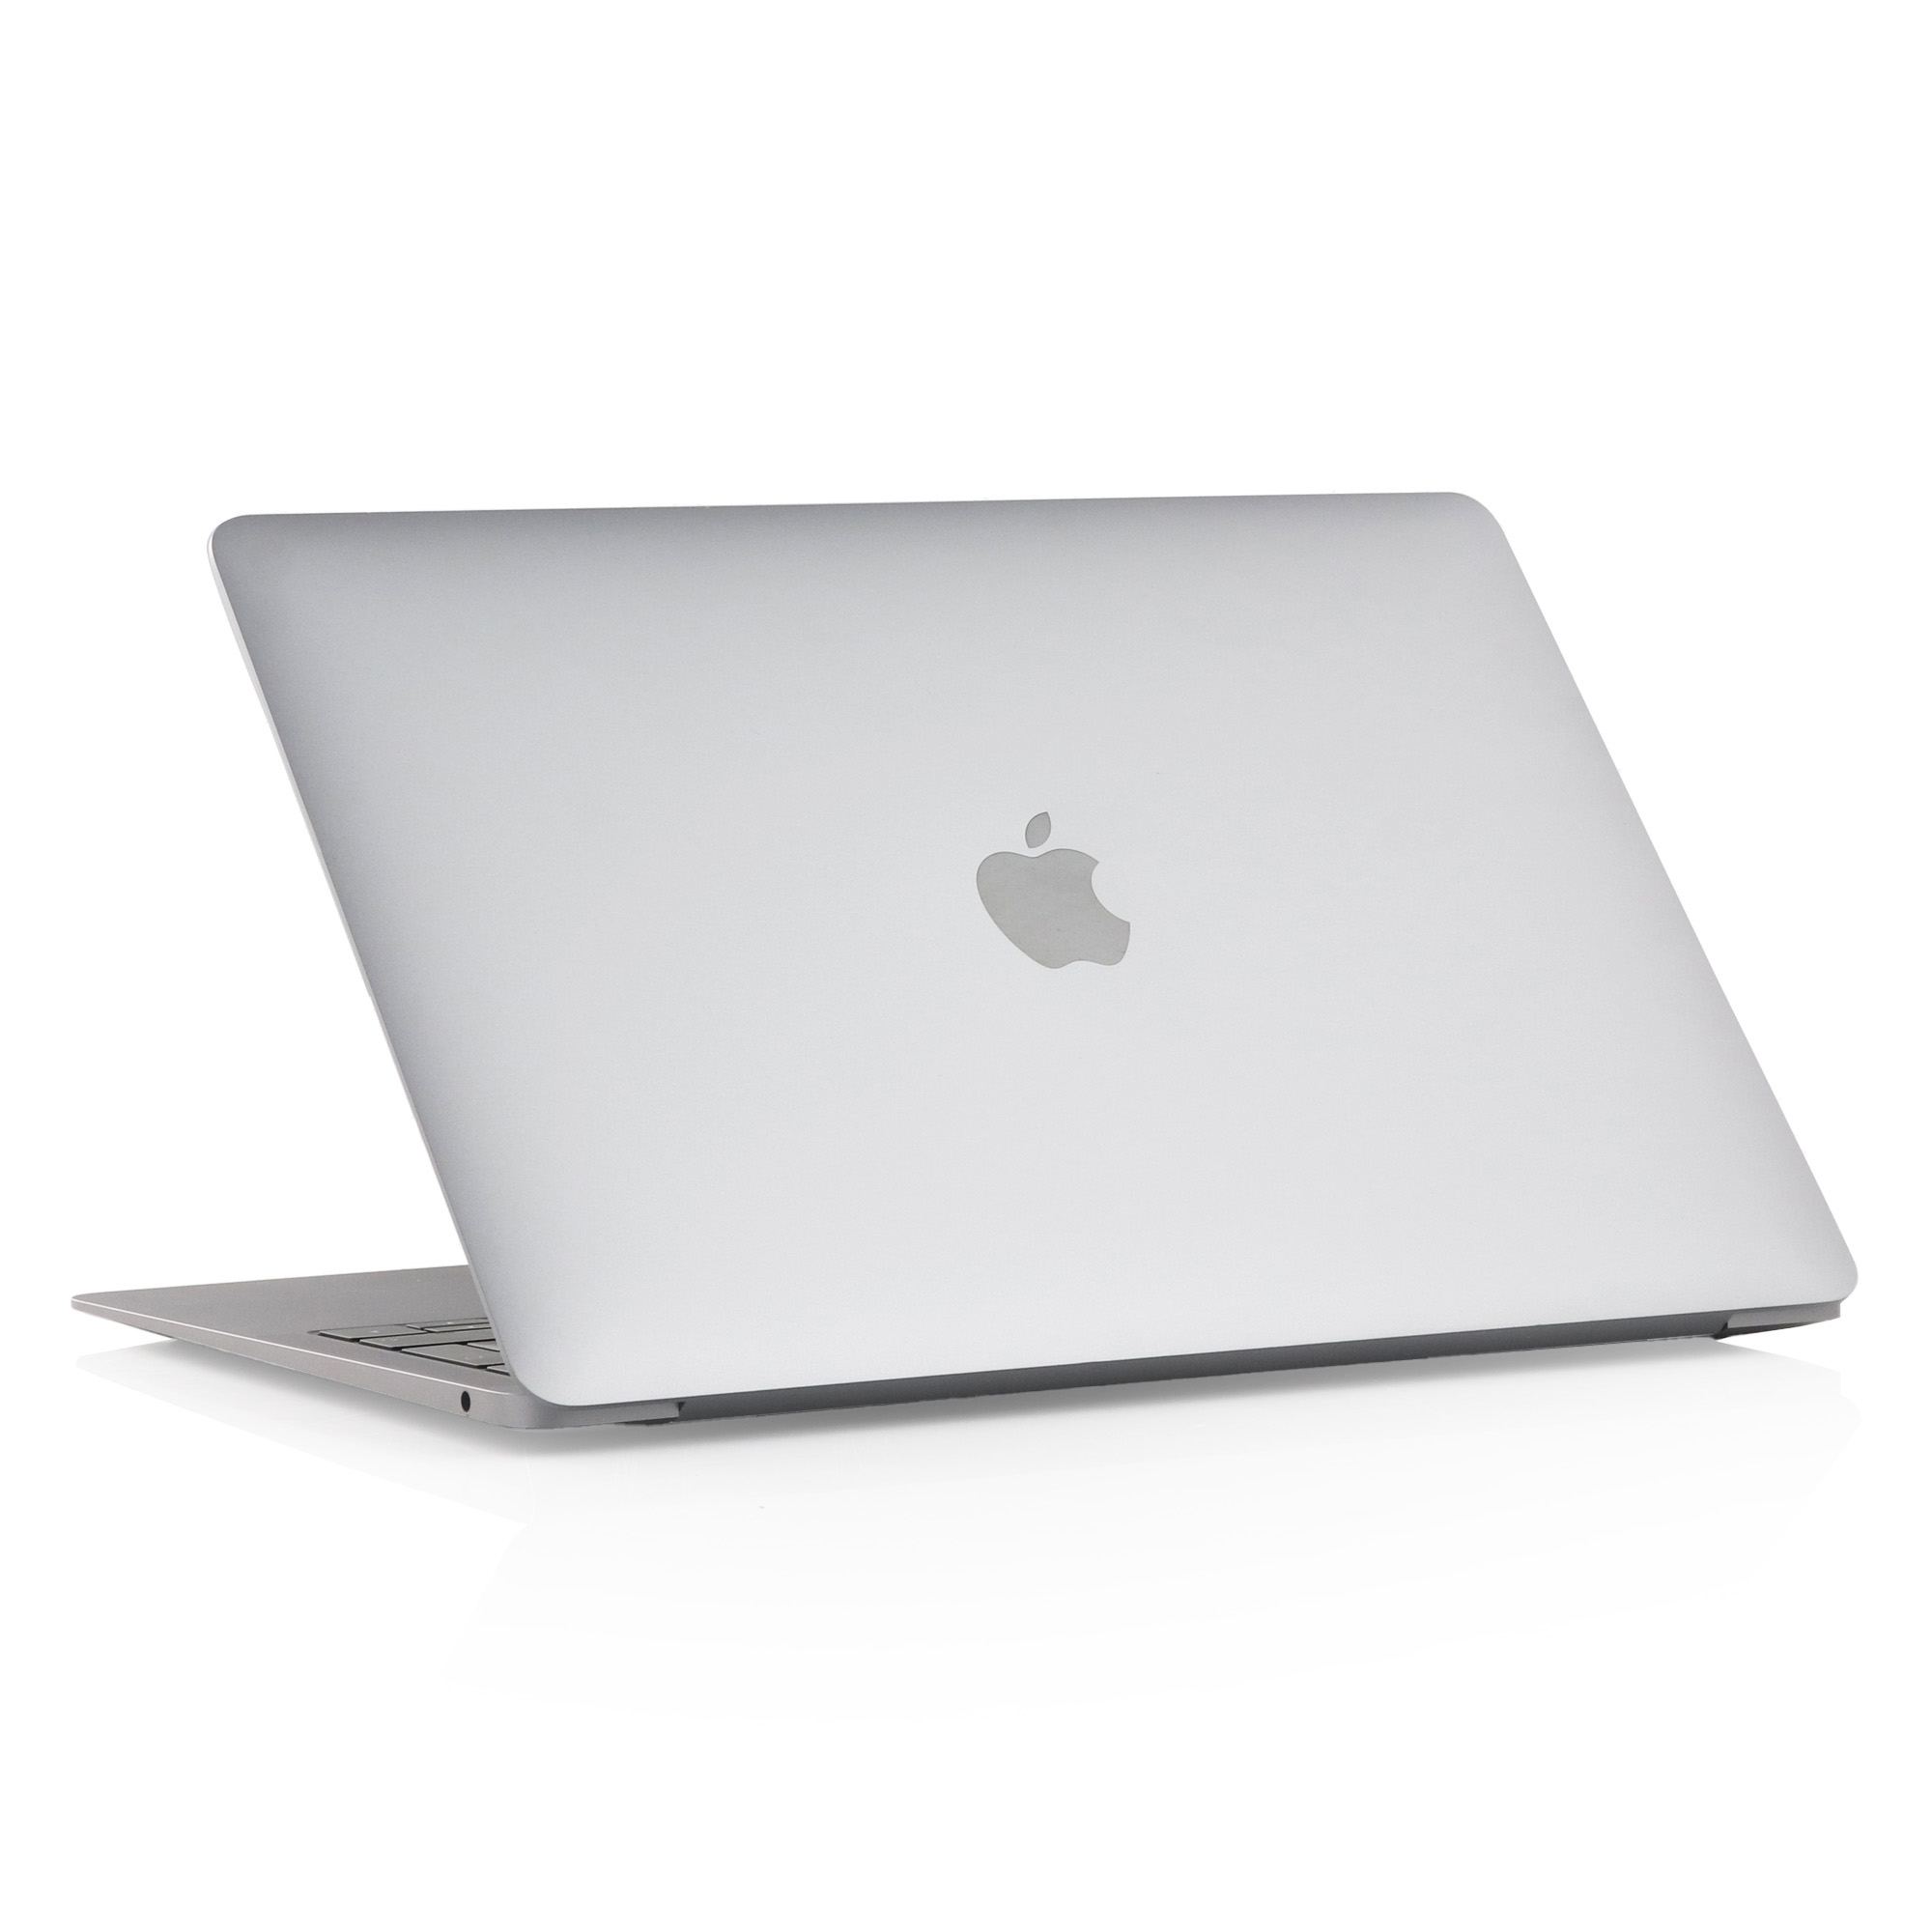 使い勝手の良い 【みや】MacBook Air M1/16GB/スペースグレー/2020 